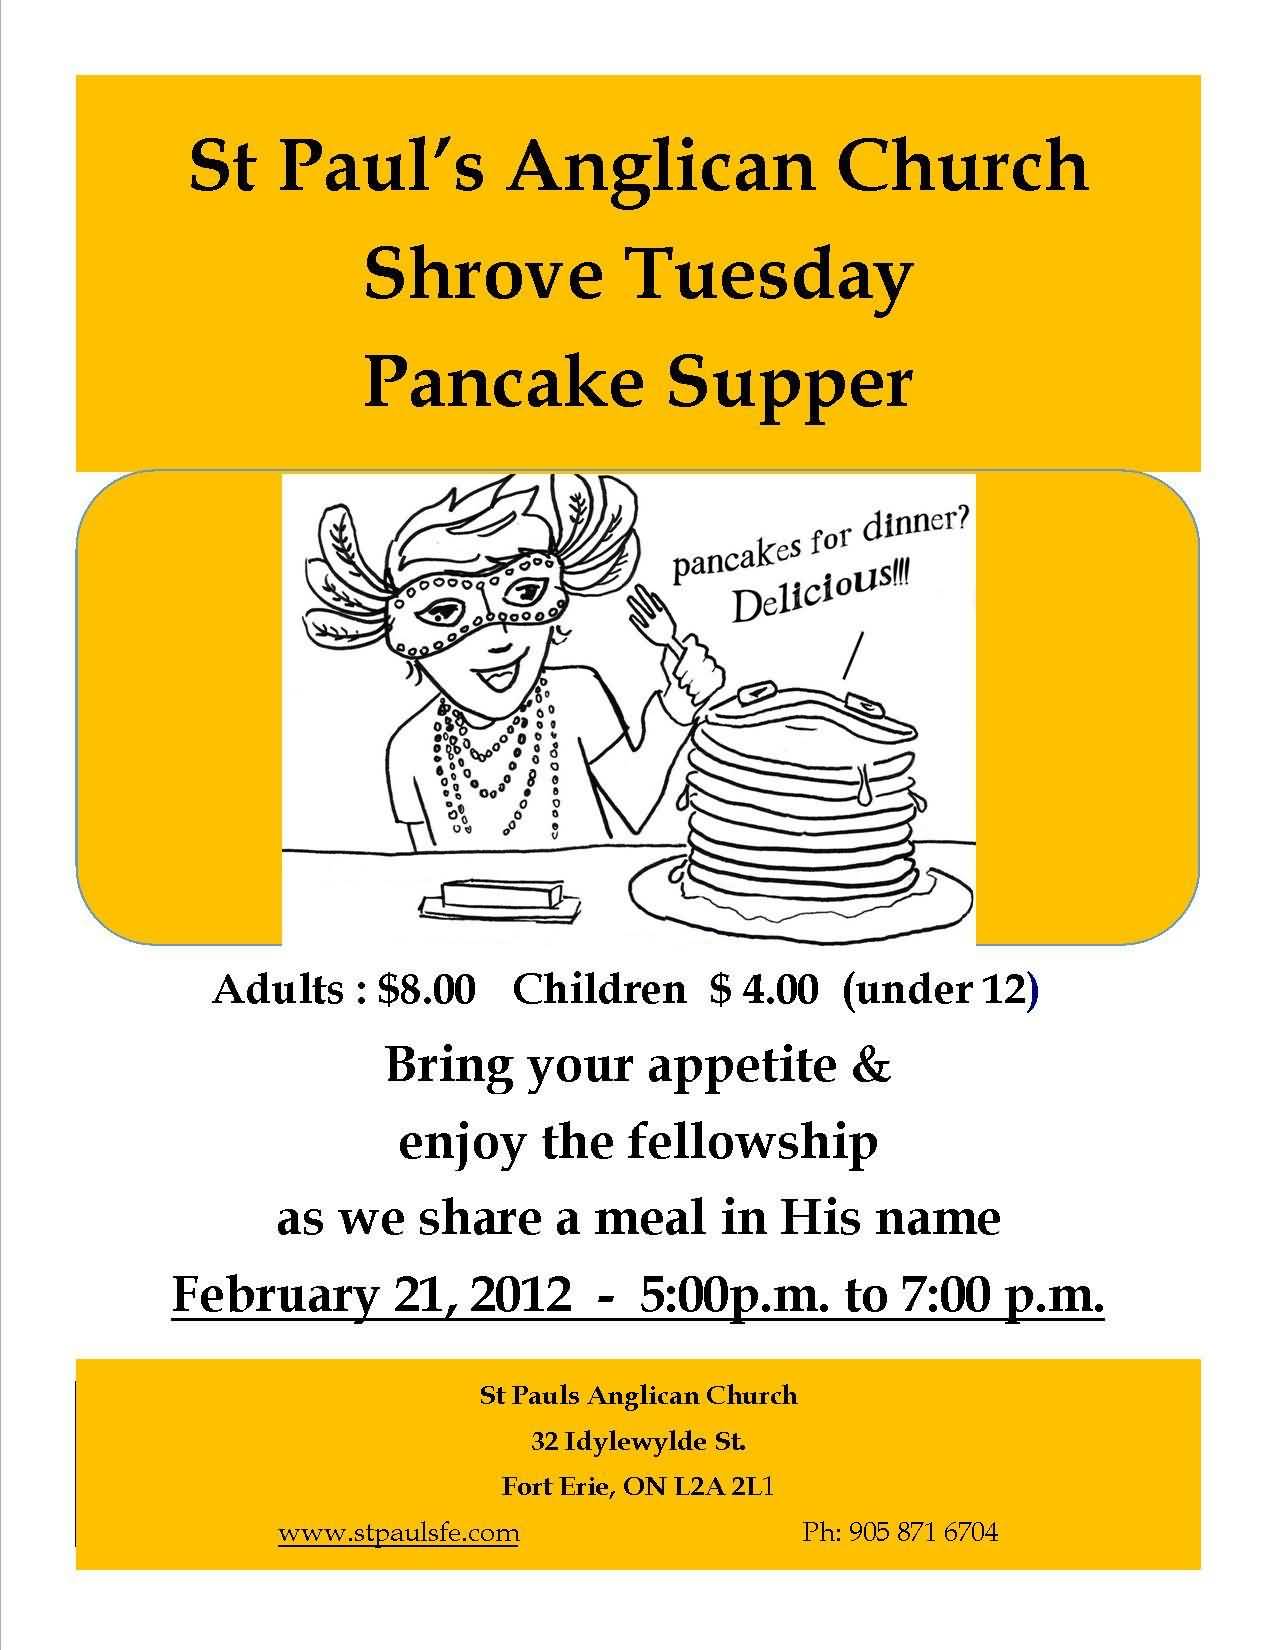 St. Paul's Anglican Church Shrove Tuesday Pancake Supper Card